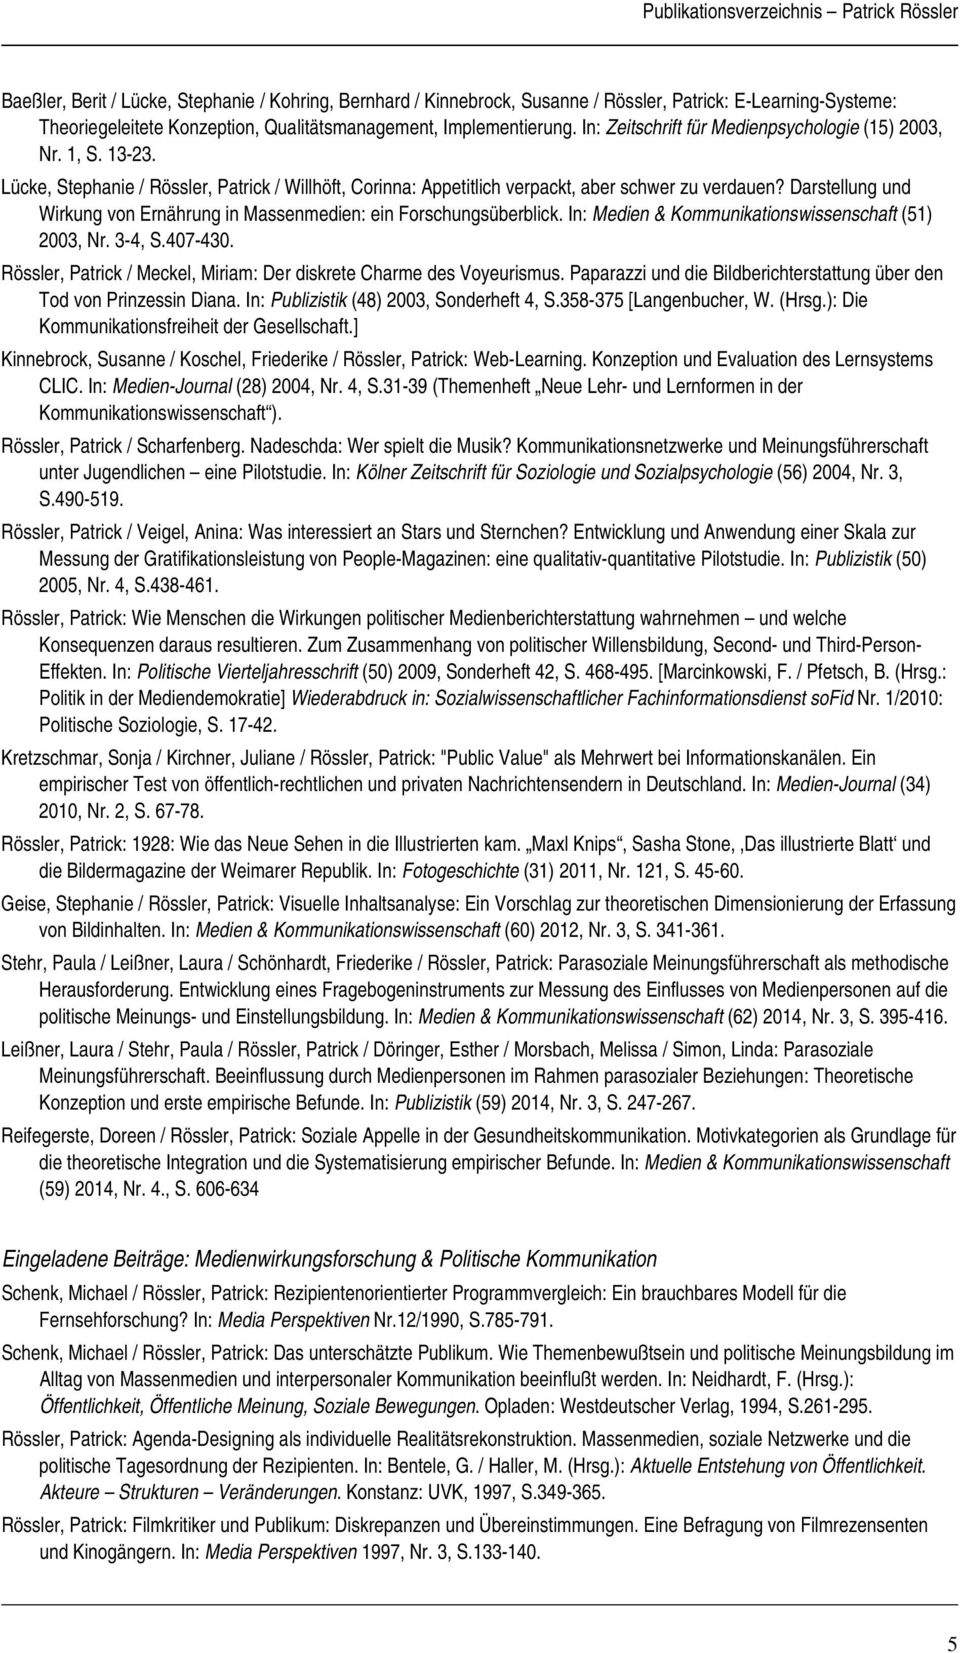 Darstellung und Wirkung von Ernährung in Massenmedien: ein Forschungsüberblick. In: Medien & Kommunikationswissenschaft (51) 2003, Nr. 3-4, S.407-430.